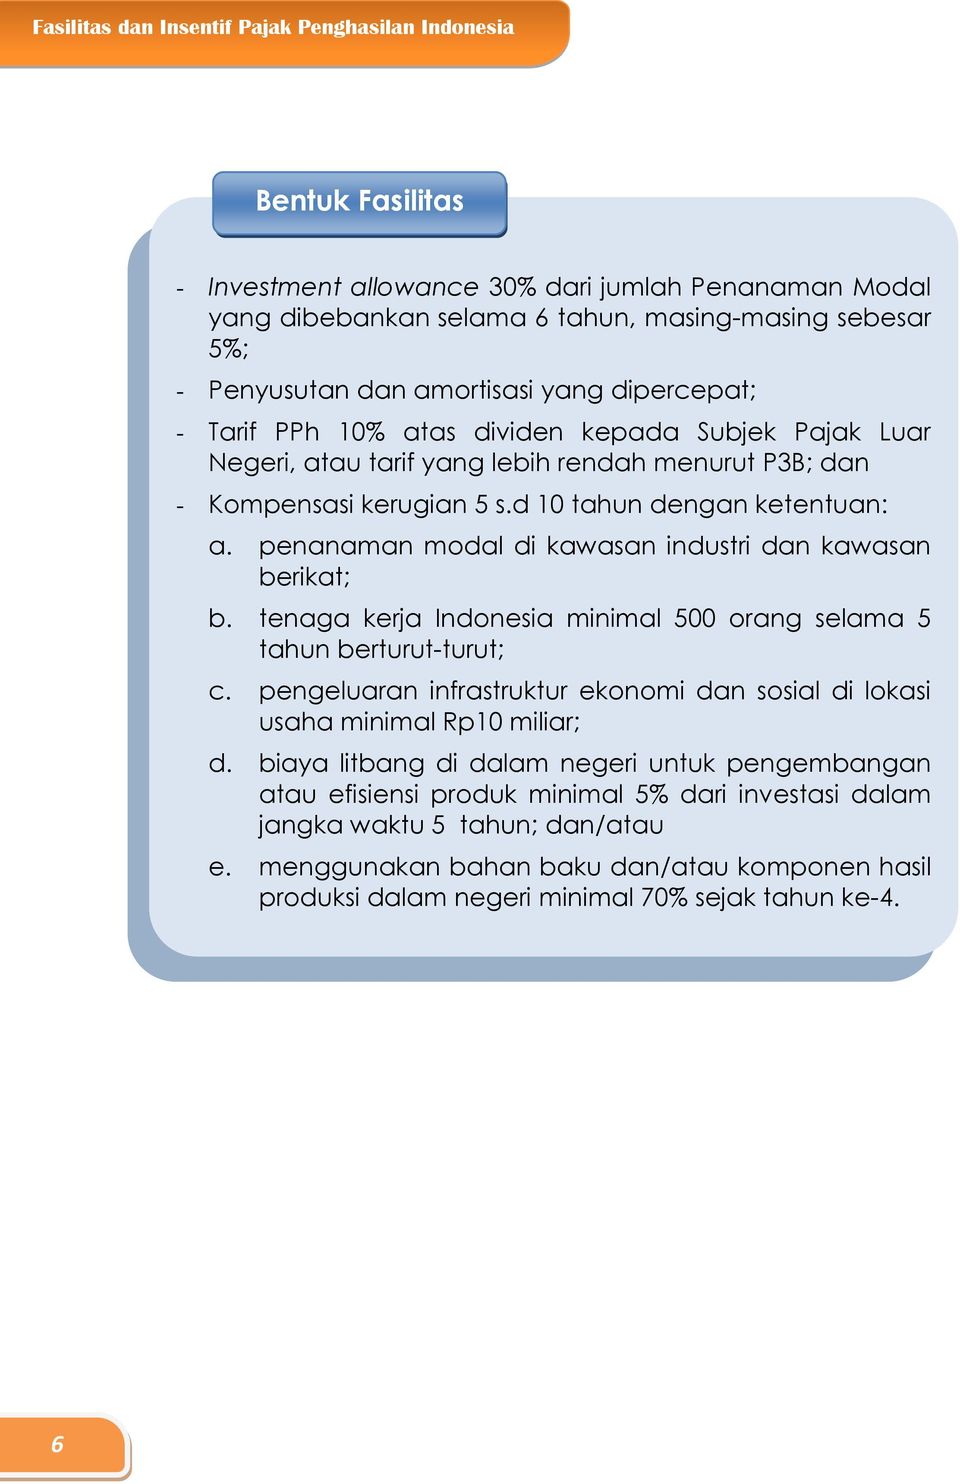 penanaman modal di kawasan industri dan kawasan berikat; b. tenaga kerja Indonesia minimal 500 orang selama 5 tahun berturut-turut; c.